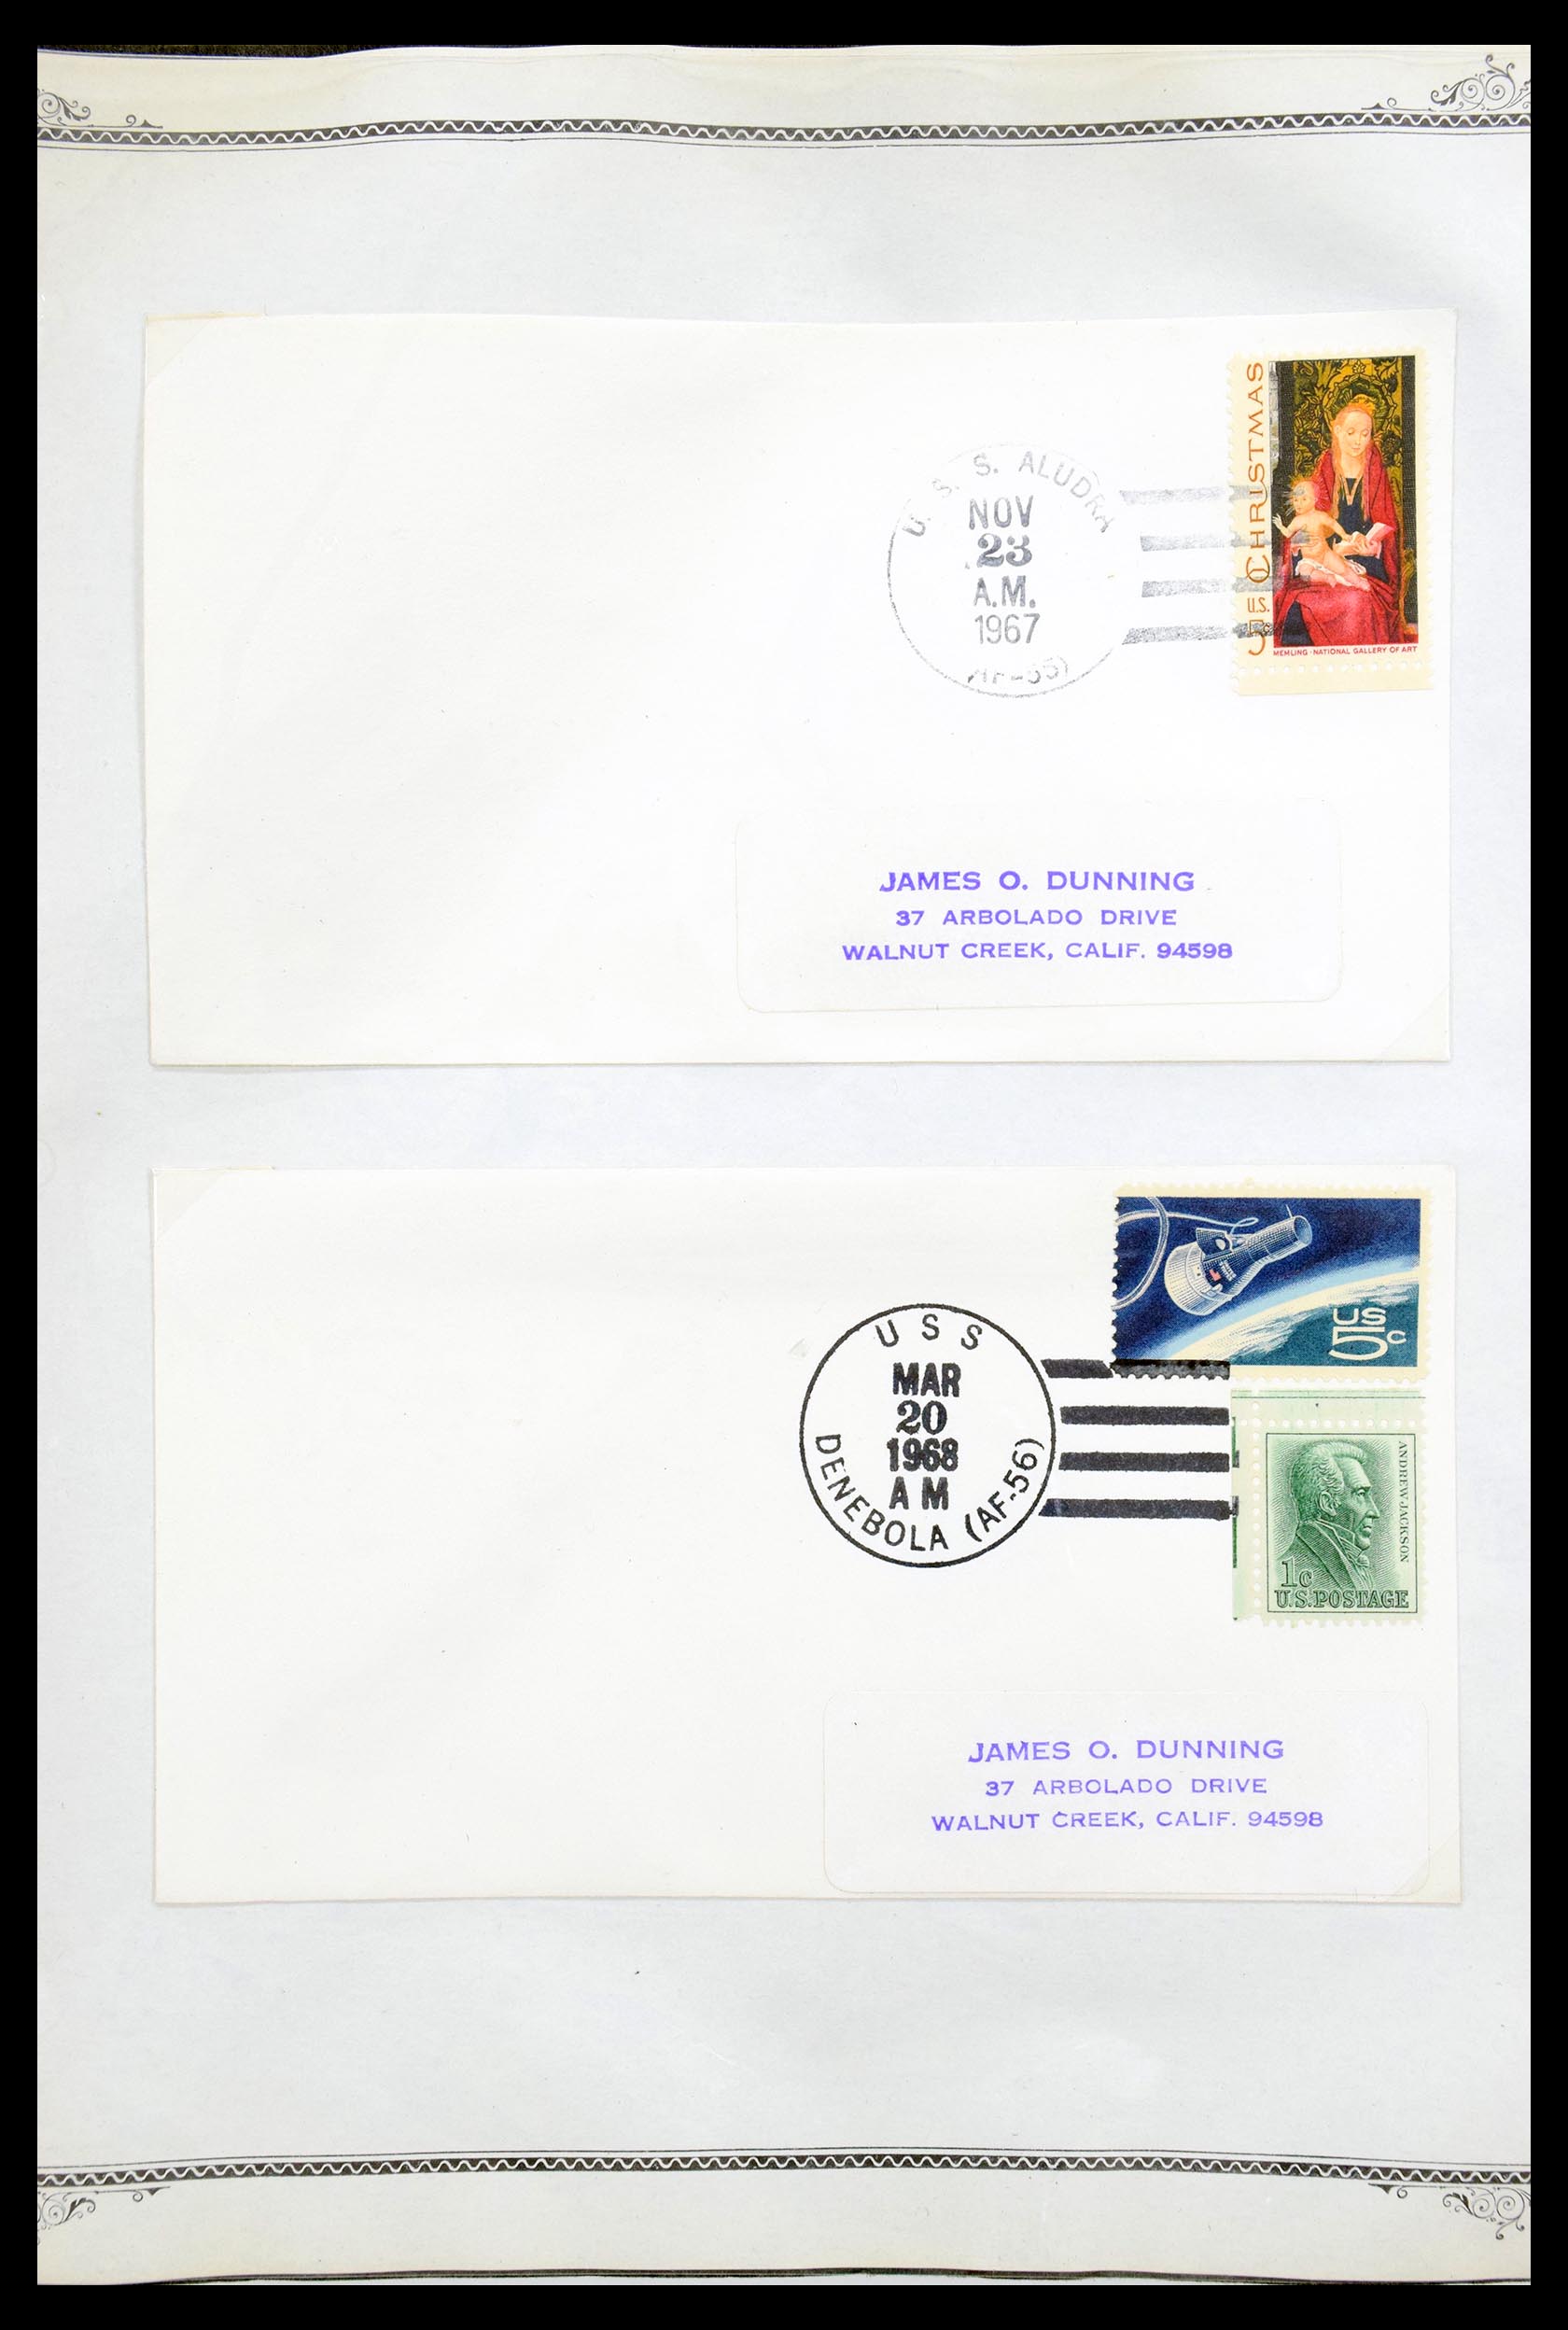 30341 028 - 30341 USA scheepspost brieven 1930-1970.